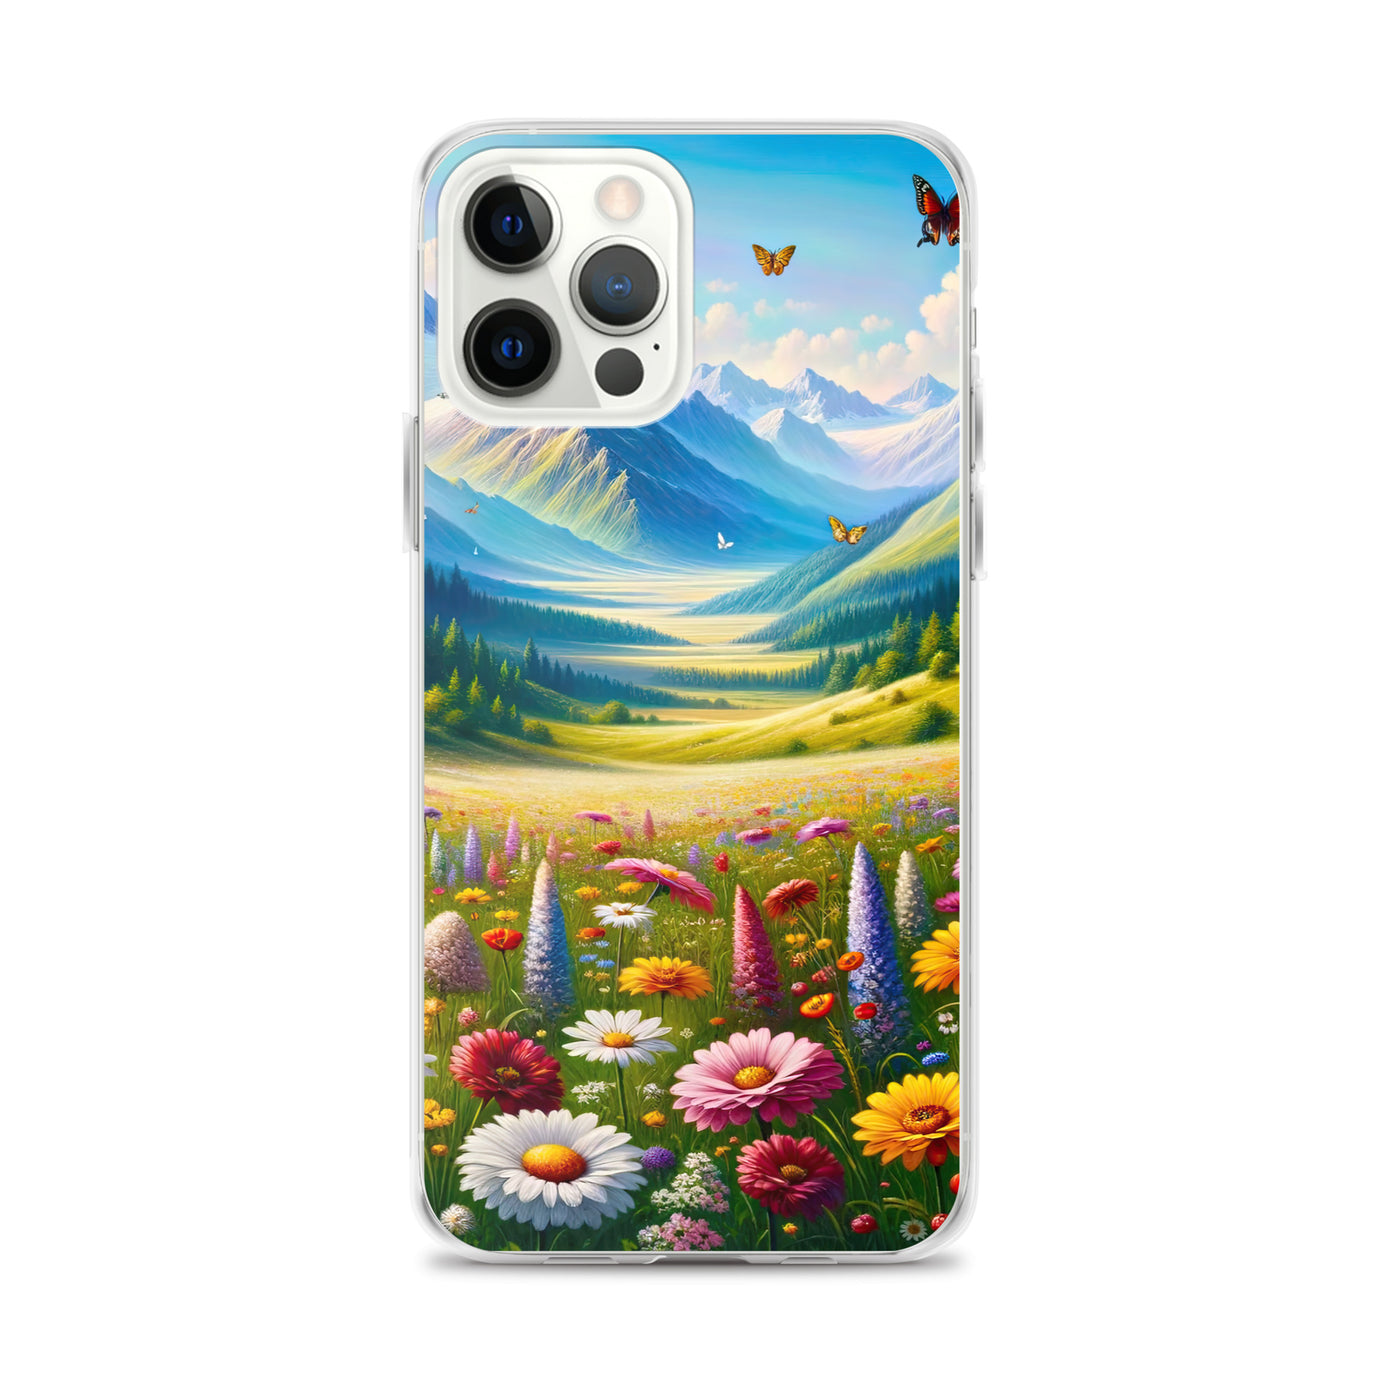 Ölgemälde einer ruhigen Almwiese, Oase mit bunter Wildblumenpracht - iPhone Schutzhülle (durchsichtig) camping xxx yyy zzz iPhone 12 Pro Max